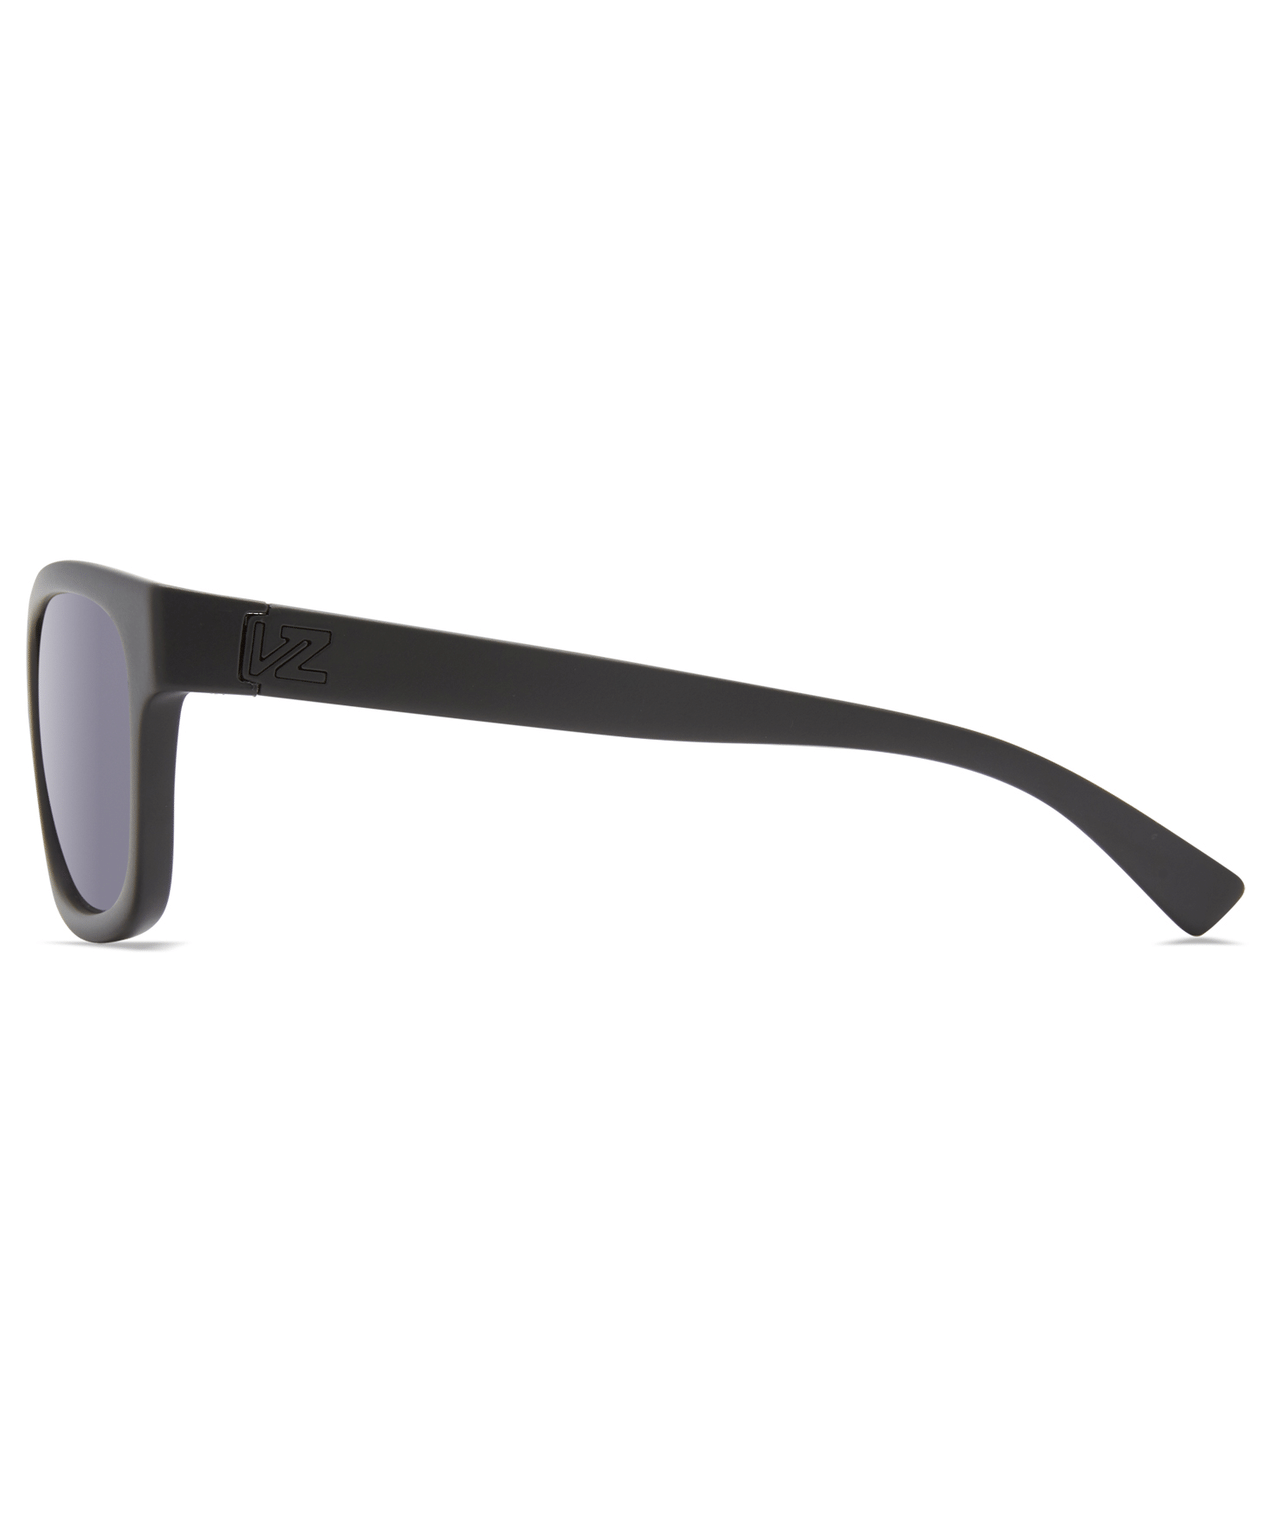 Von Zipper Sunglasses - APPROACH POLAR